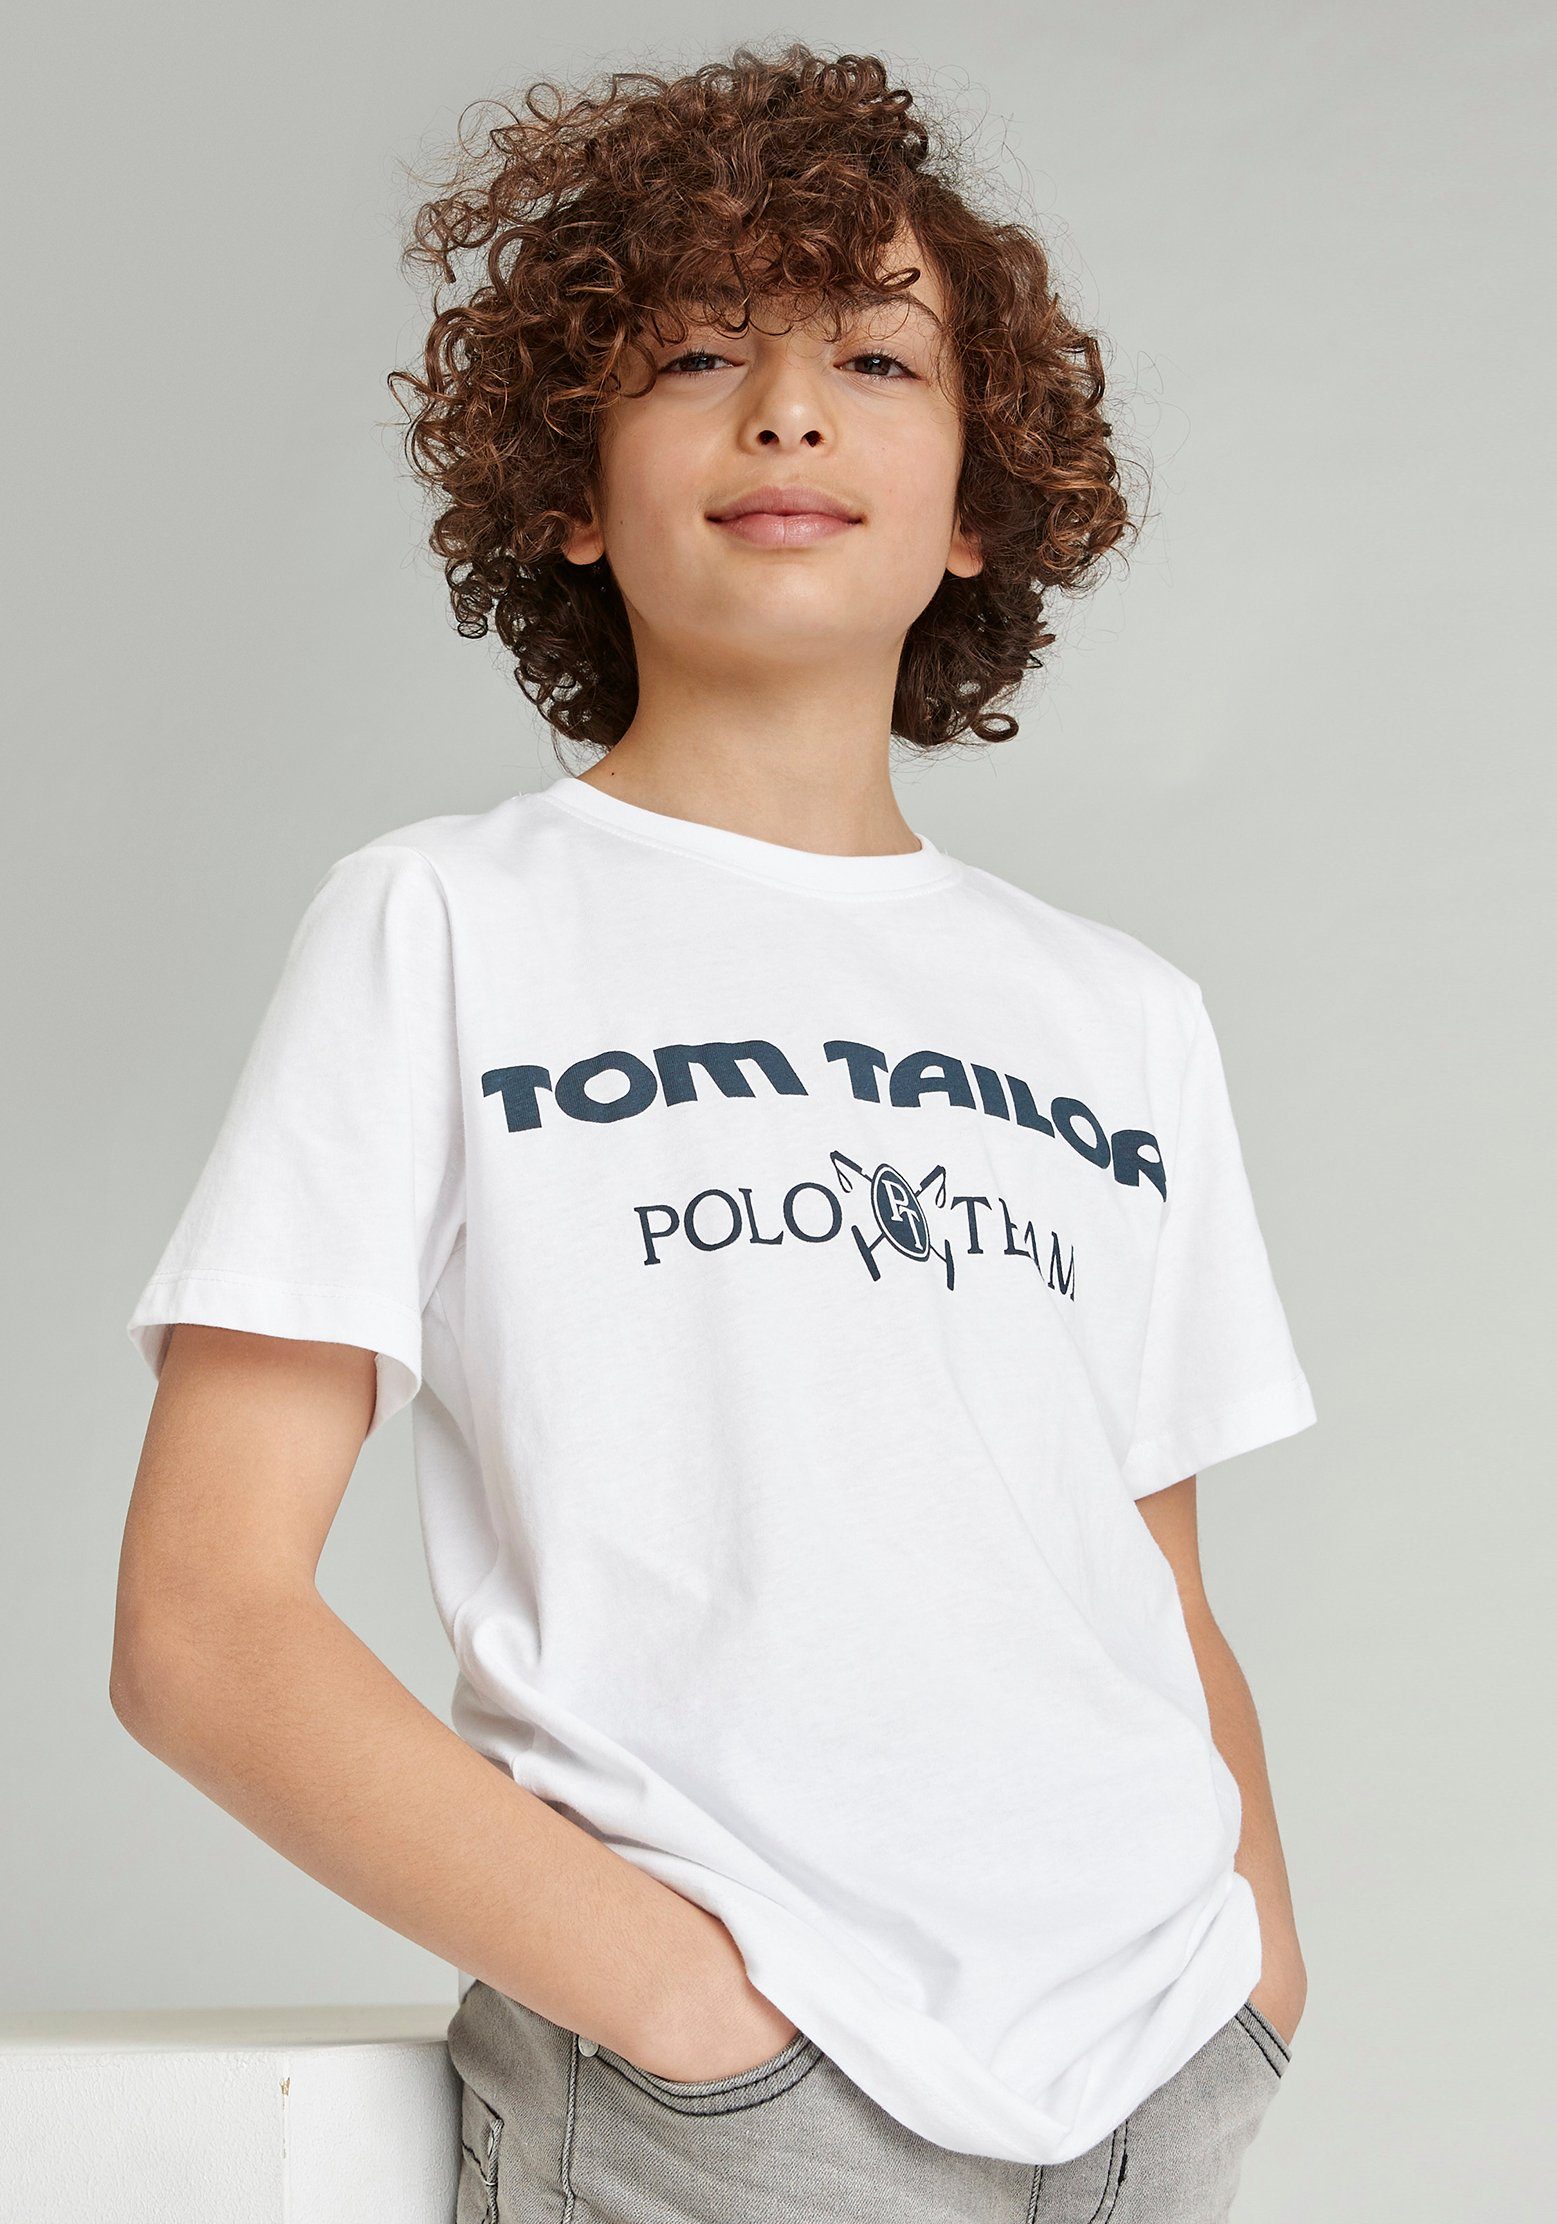 TOM TAILOR Polo Team T-Shirt mit Logodruck kaufen | OTTO